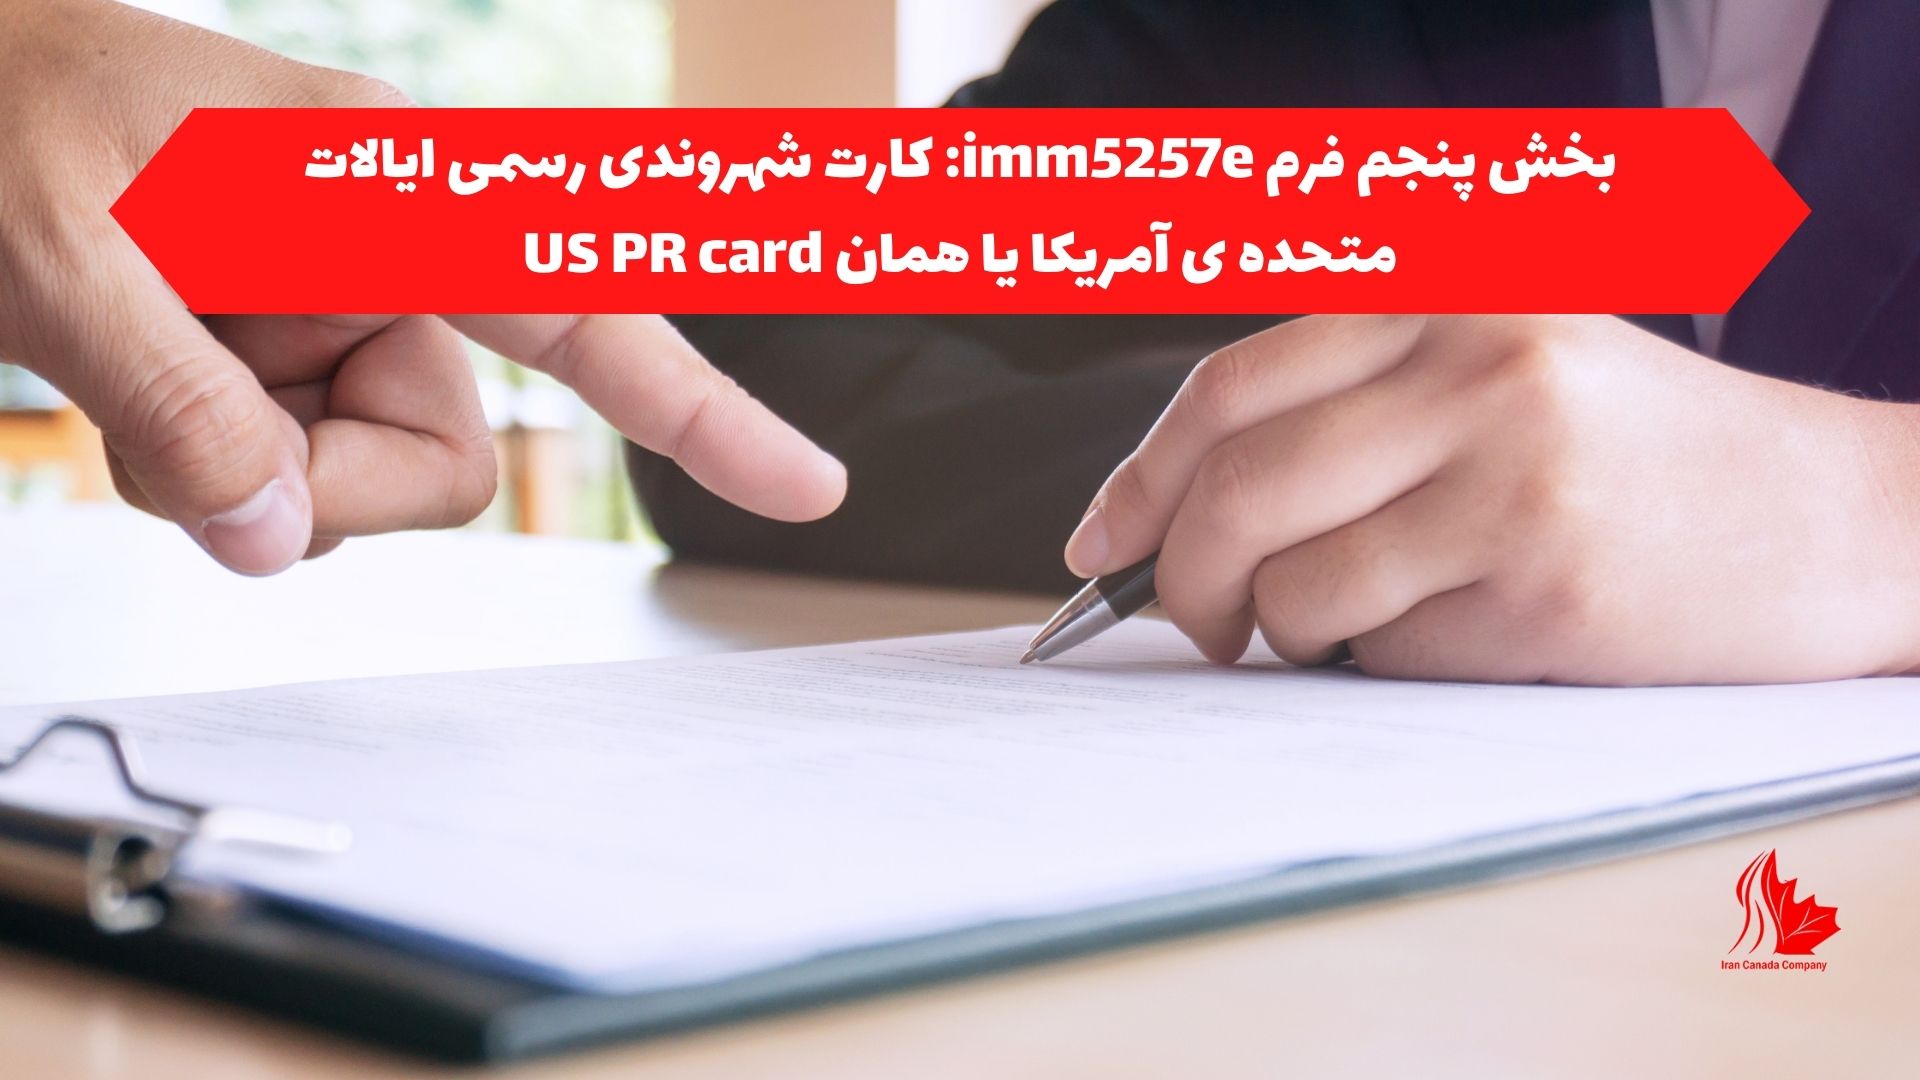 بخش پنجم فرم imm5257e: کارت شهروندی رسمی ایالات متحده ی آمریکا یا همان US PR card